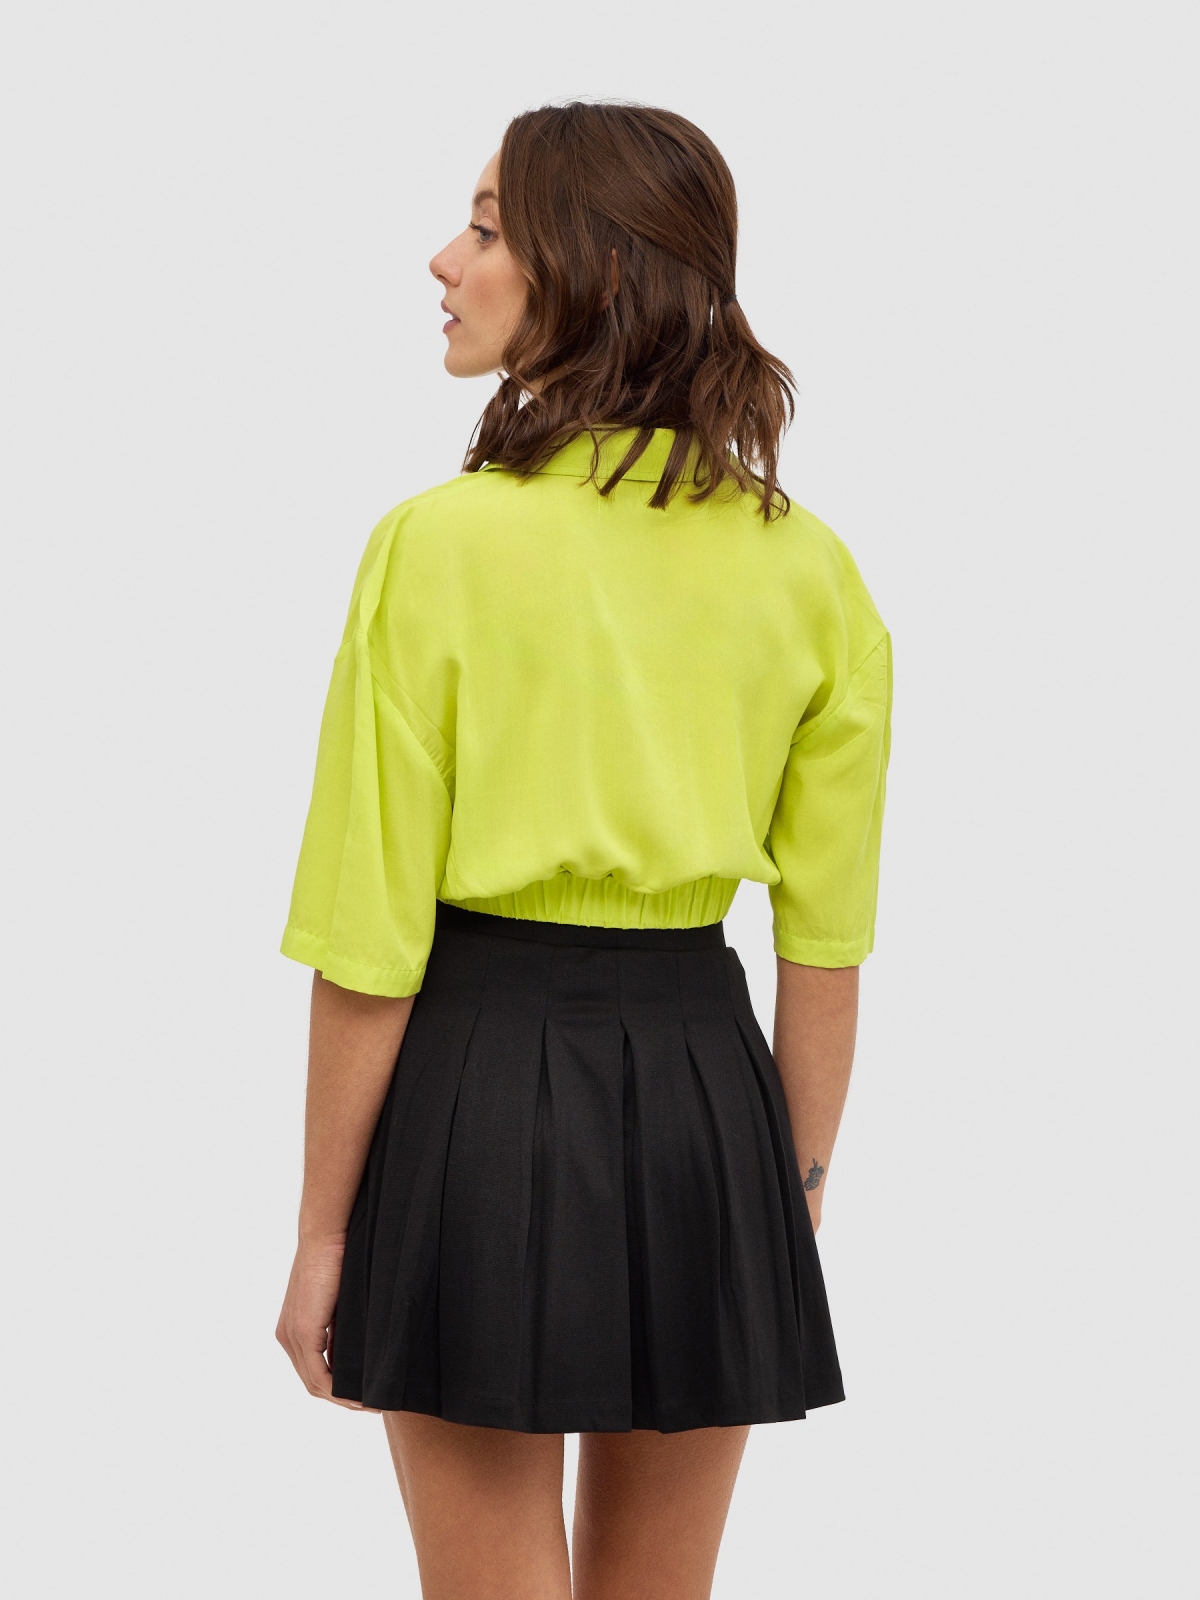 Mini elastic slats skirt black middle back view